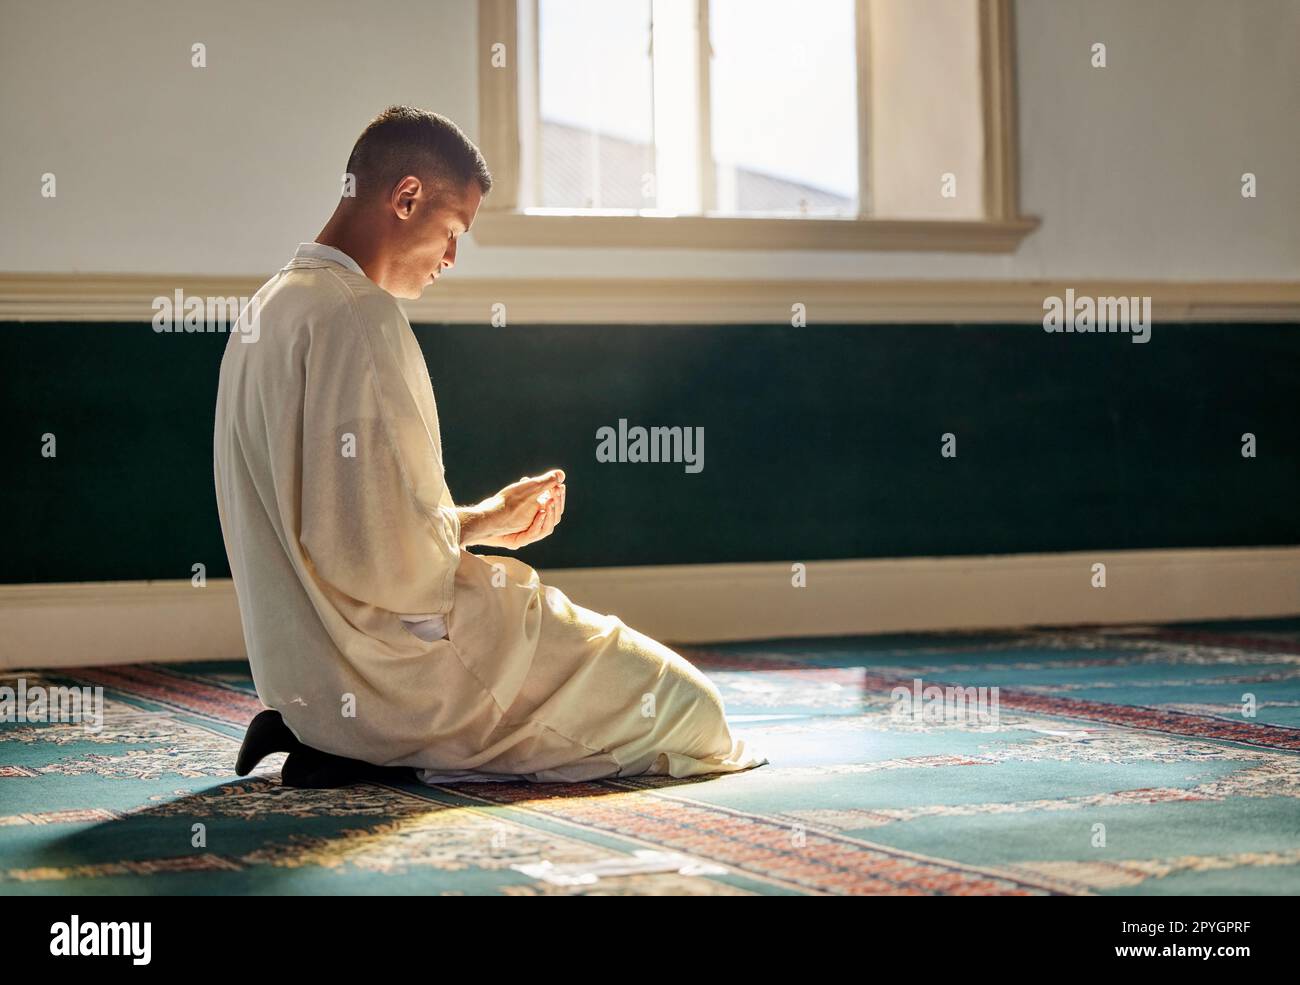 Moschee, Gottesdienst und muslimischer Mann, der auf Knien für Dankbarkeit, Unterstützung betet, oder ramadan für spirituelles Wohlbefinden. Religion, Tradition und islamischer Mann betet oder rezitiert koran zu allah im islam-Tempel. Stockfoto